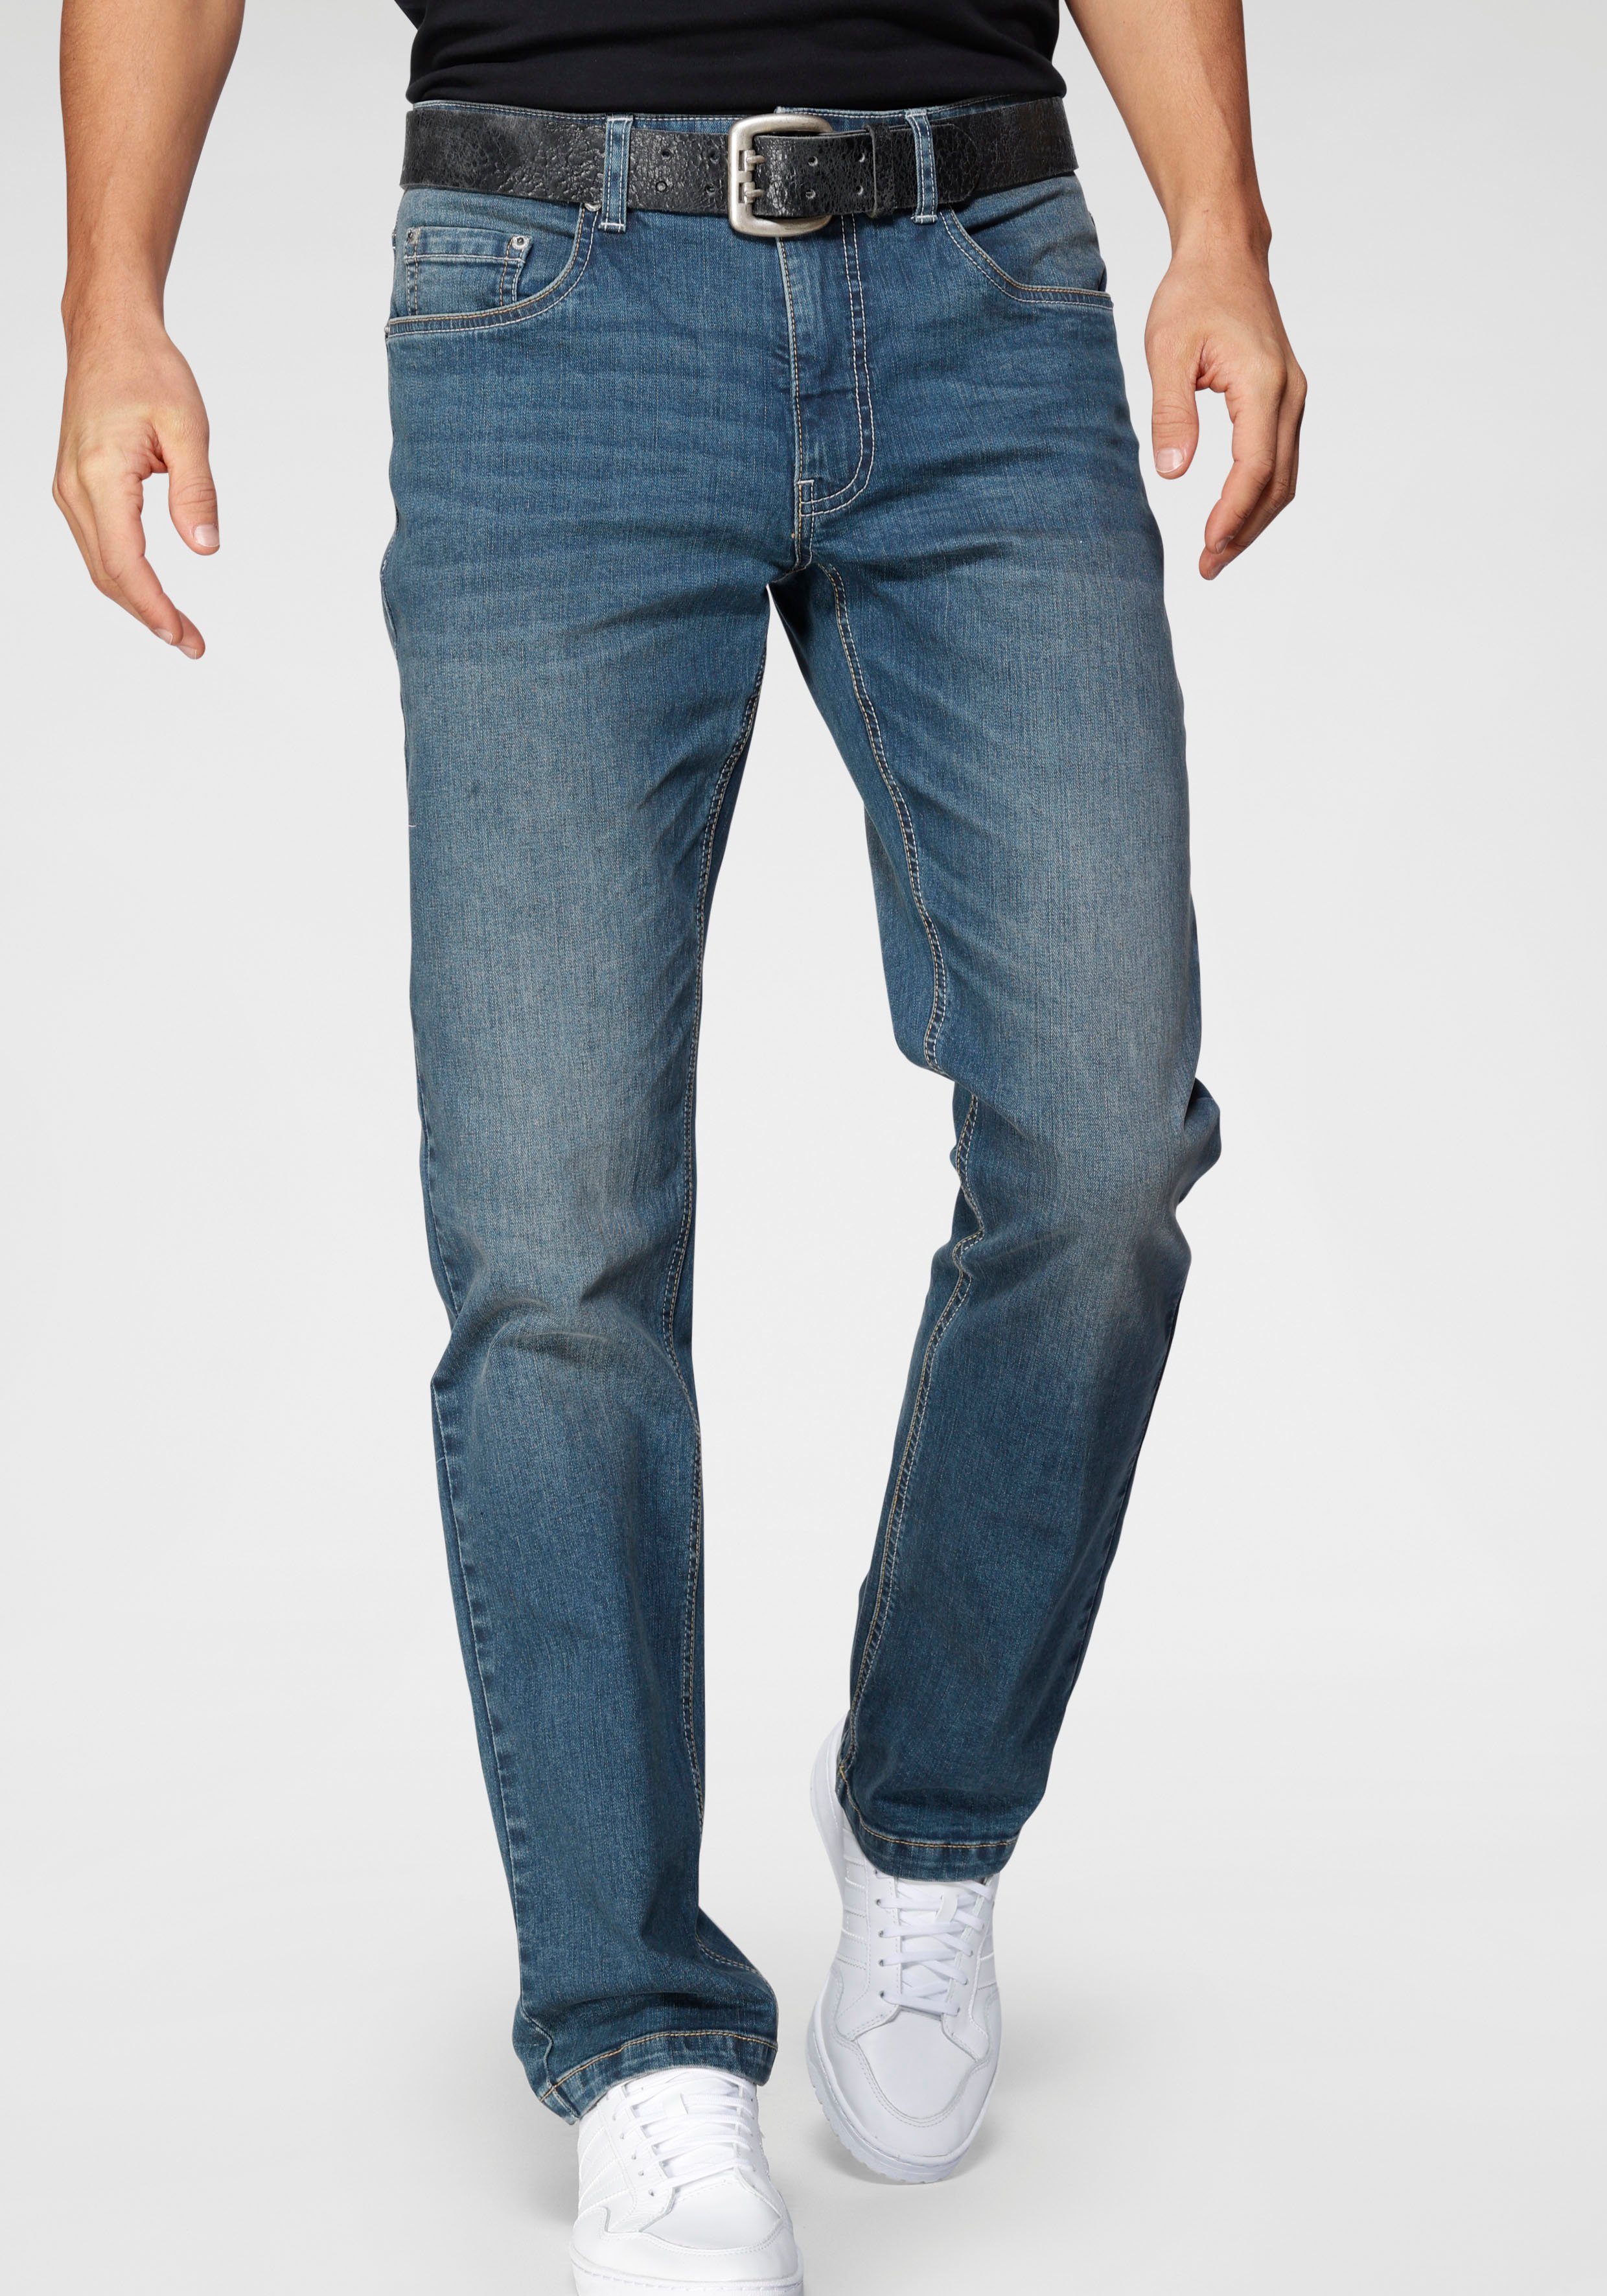 0,90 € / Stück Hosen Jeanshosen Reißverschluß 12,13,14,15,16 cm  Auswahl 